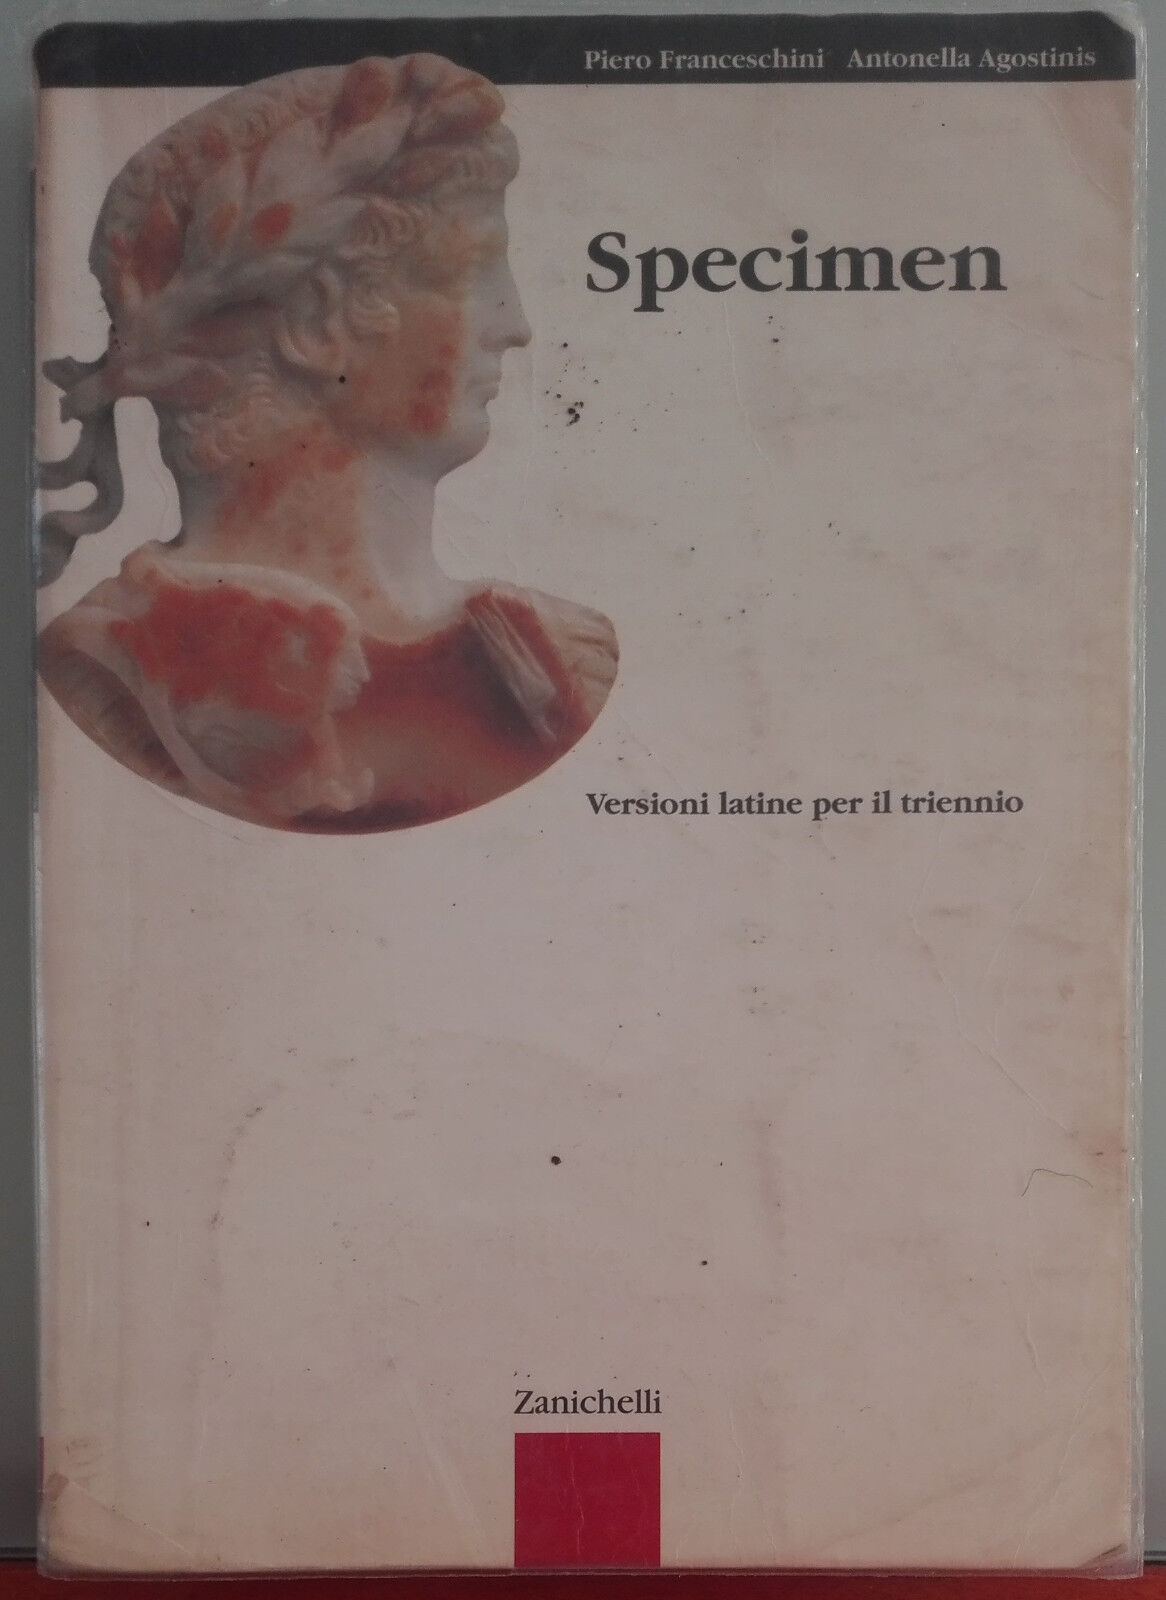 Specimen - Piero Franceschini,Antonella Agostinis - Zanichelli, 2008 - A